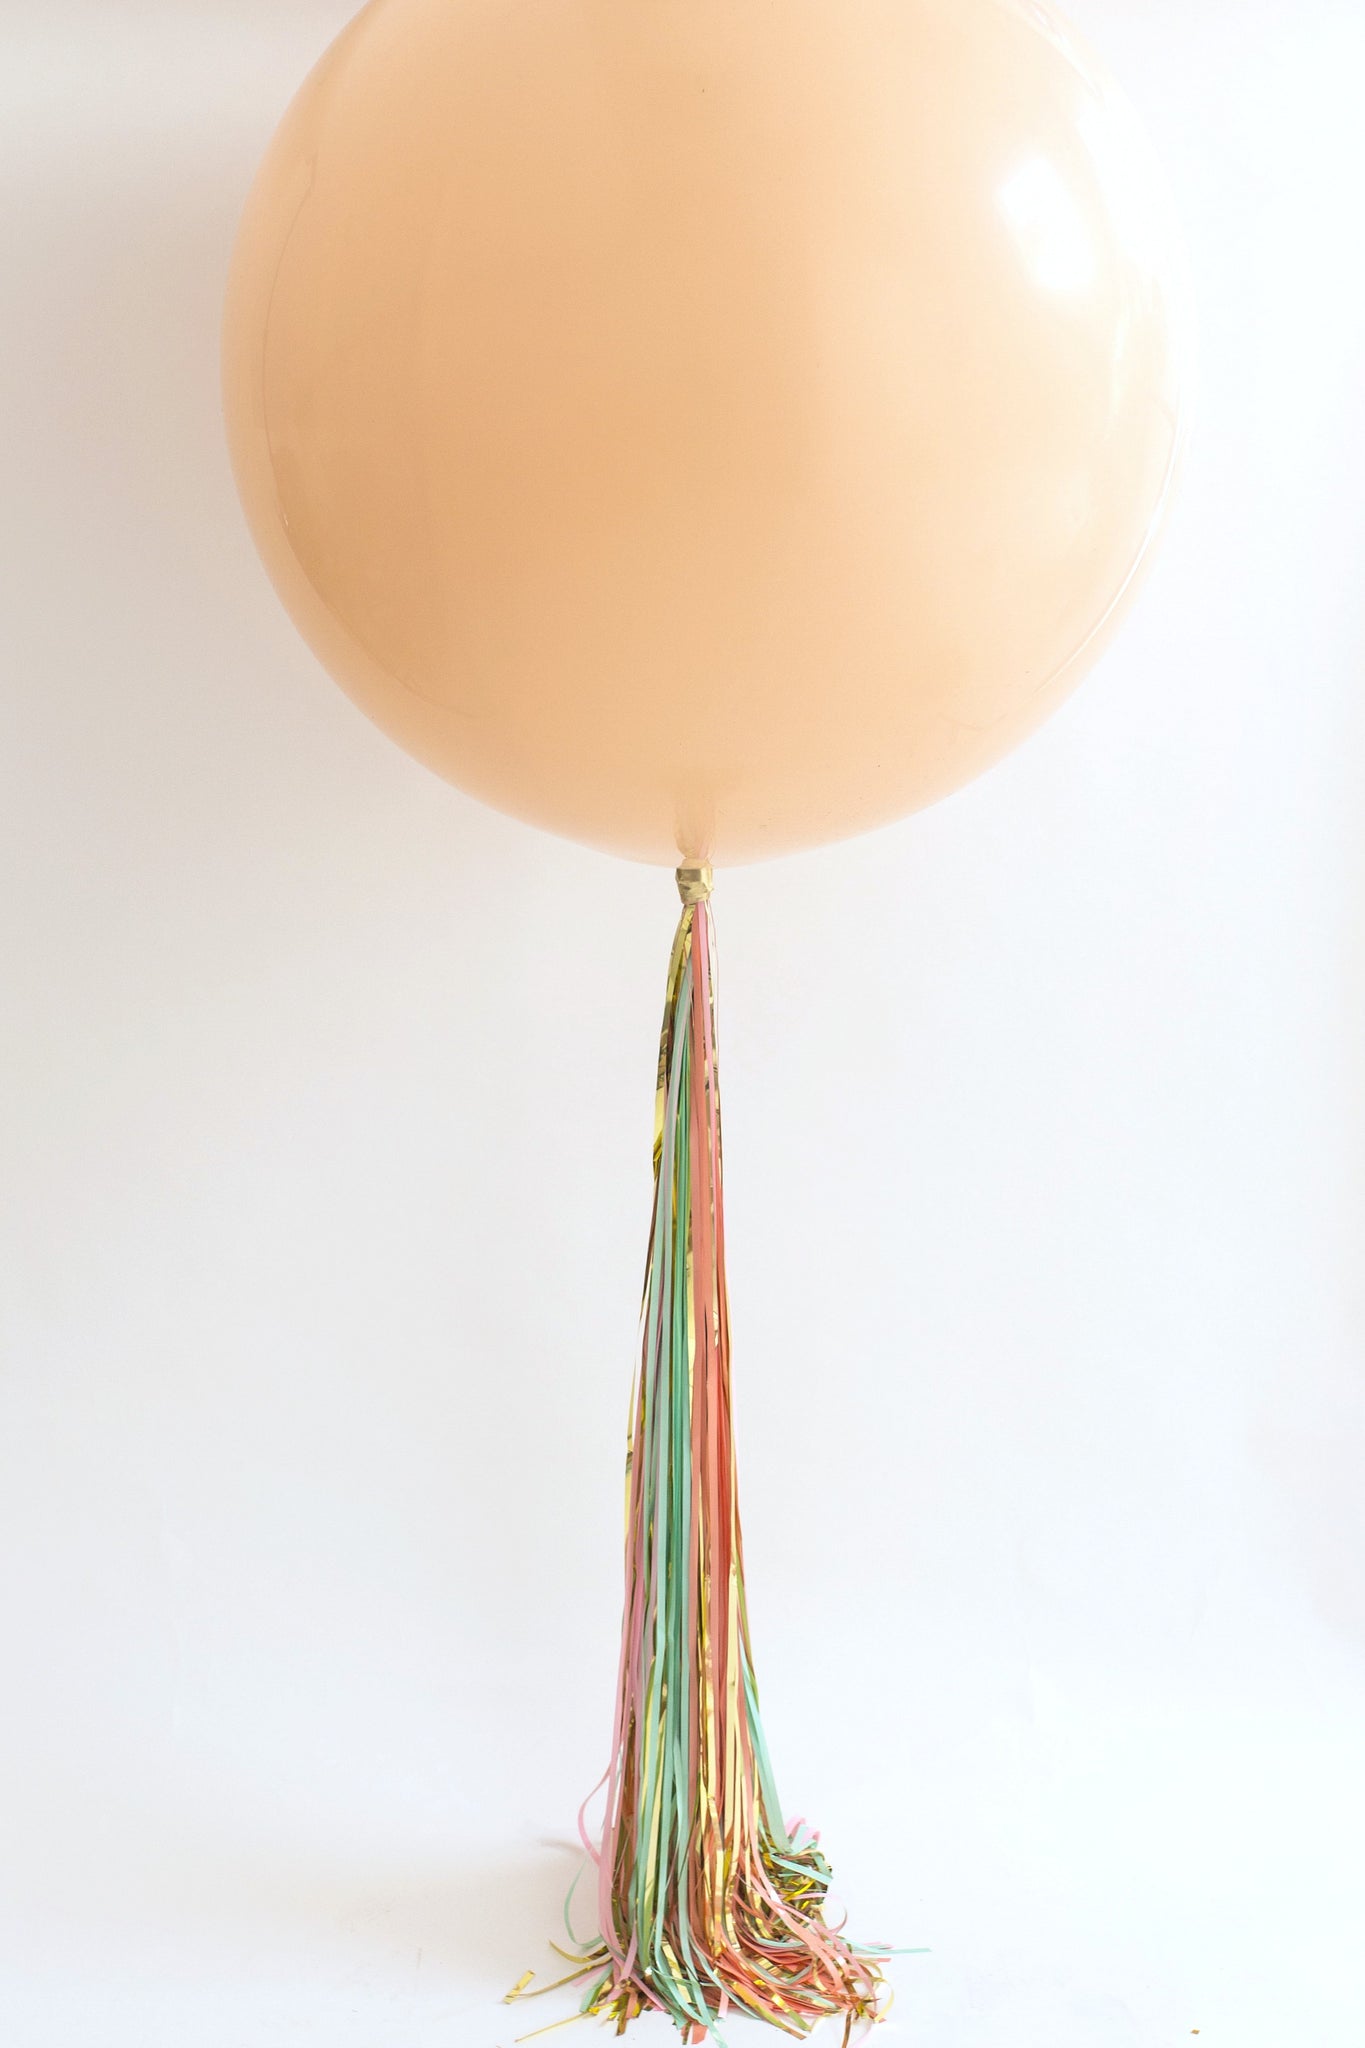 Balloon Tails 